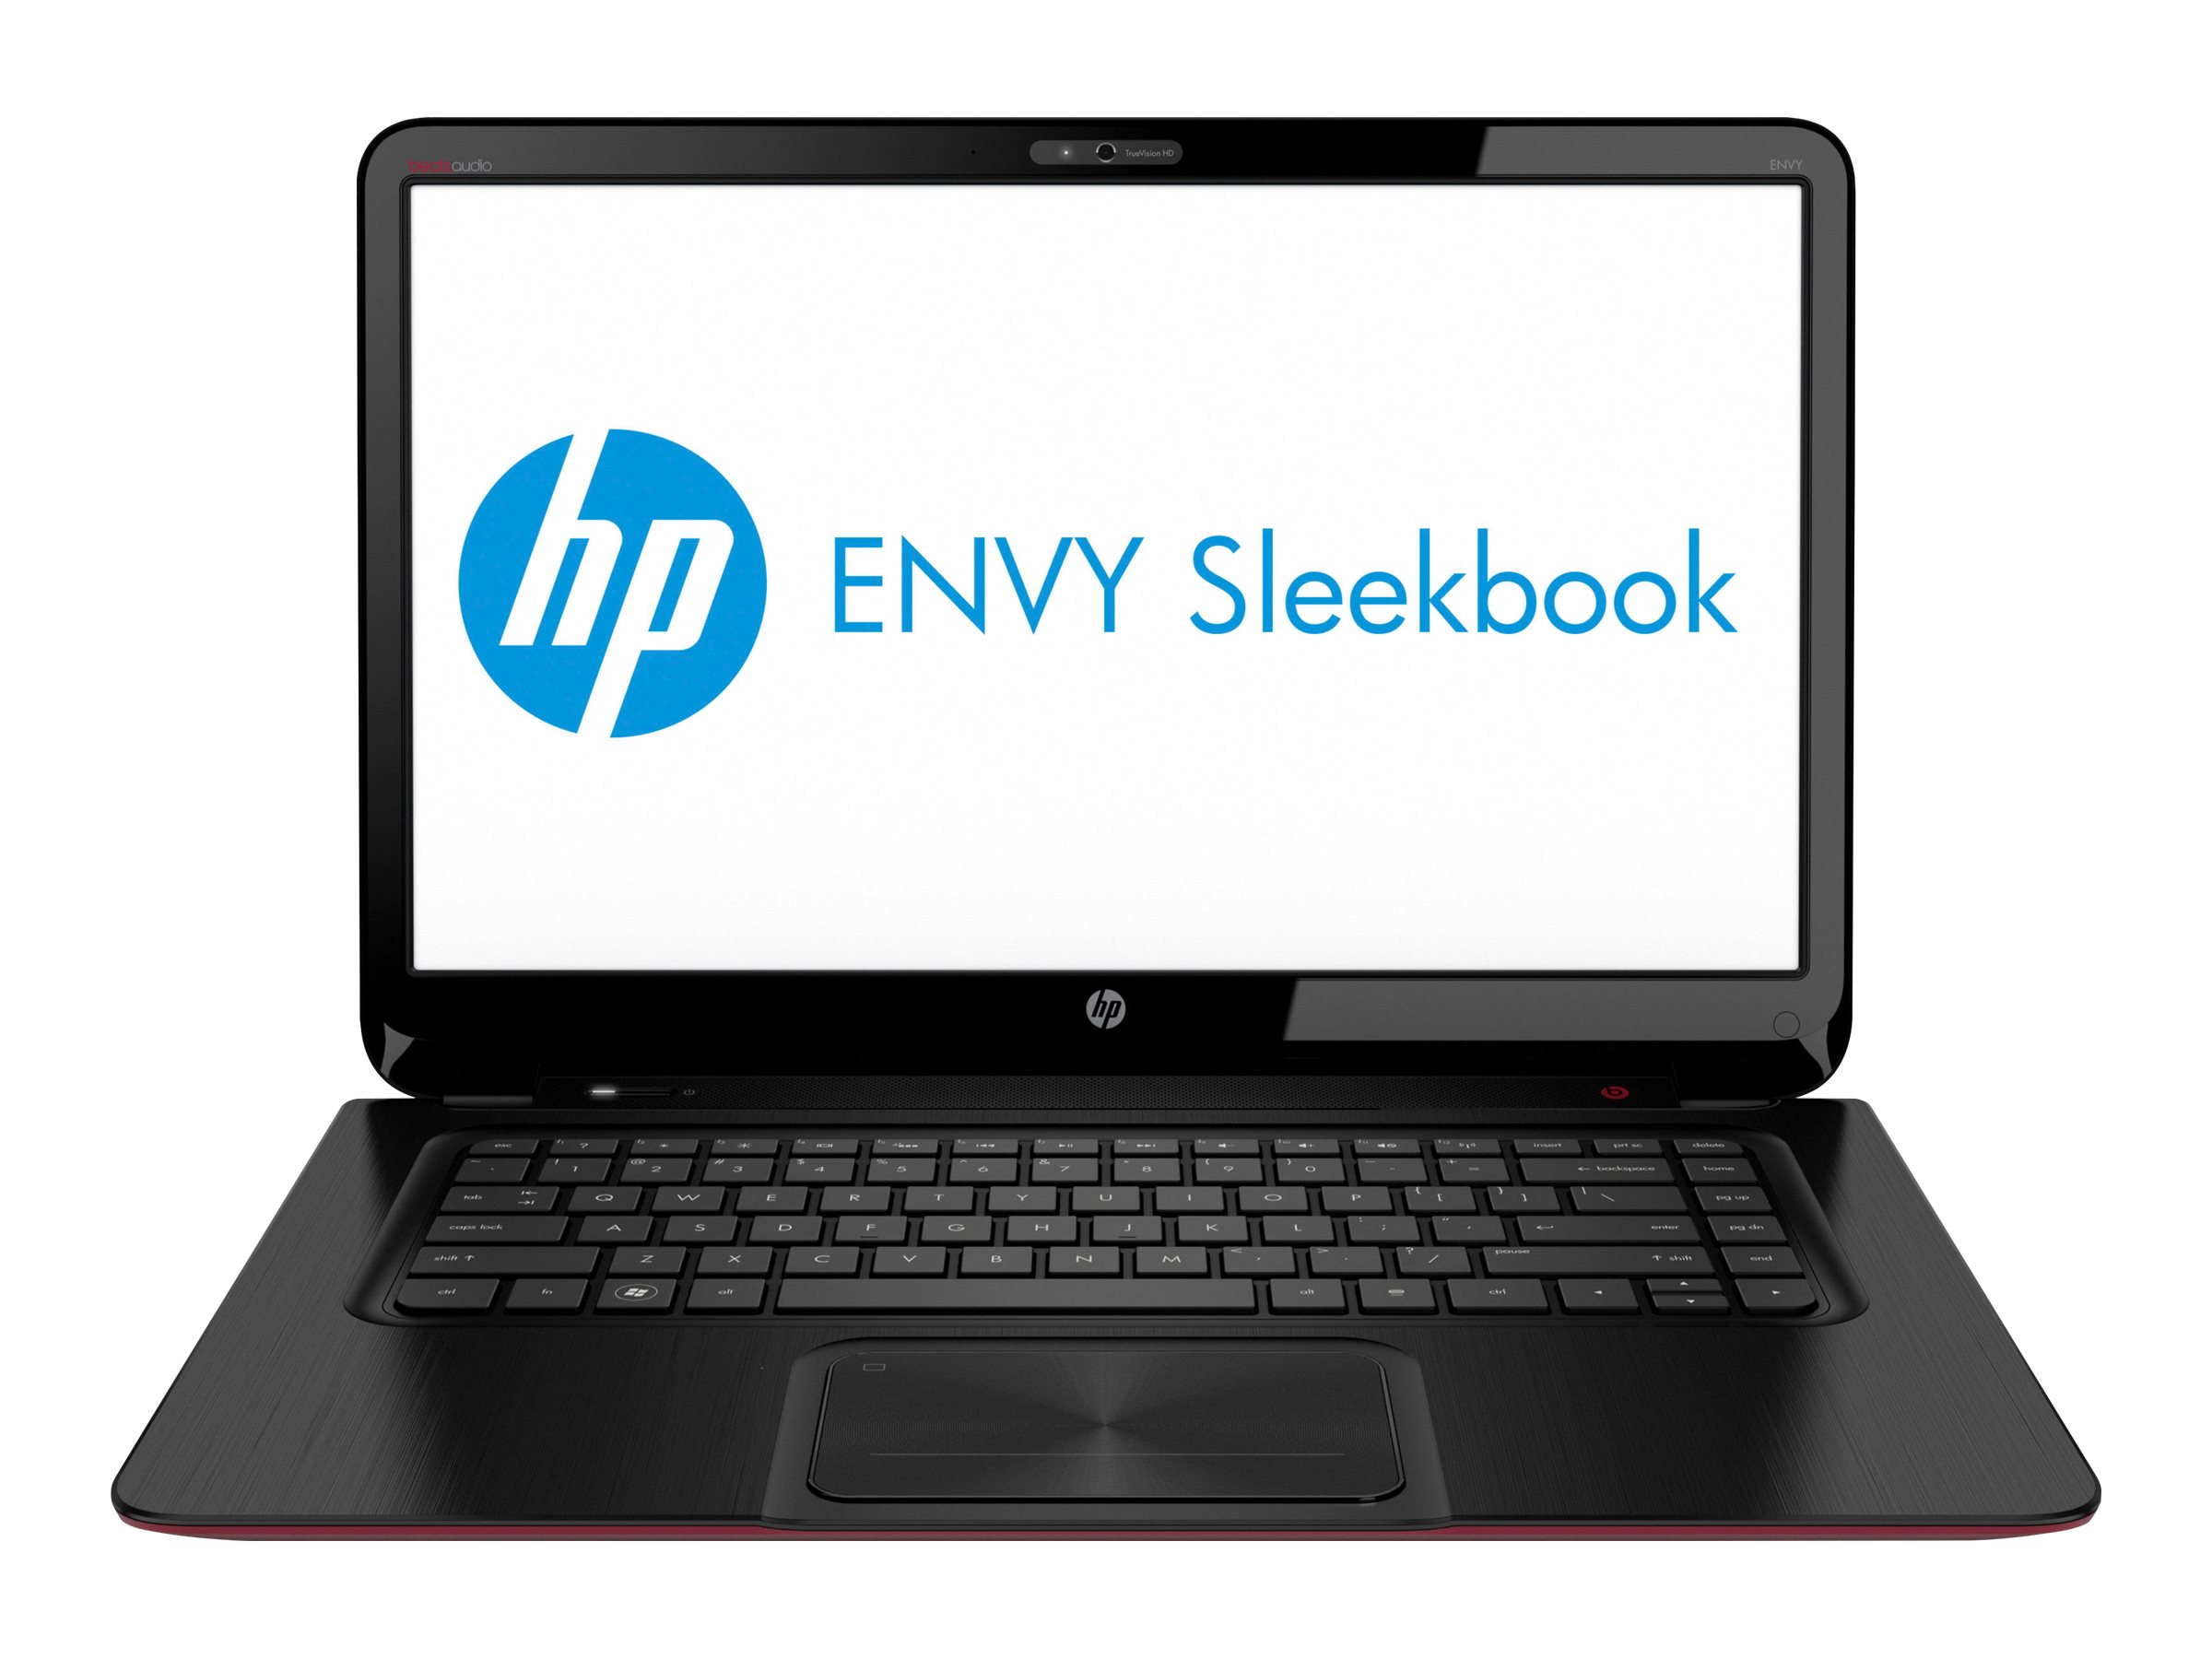 HP ENVY Sleekbook 6